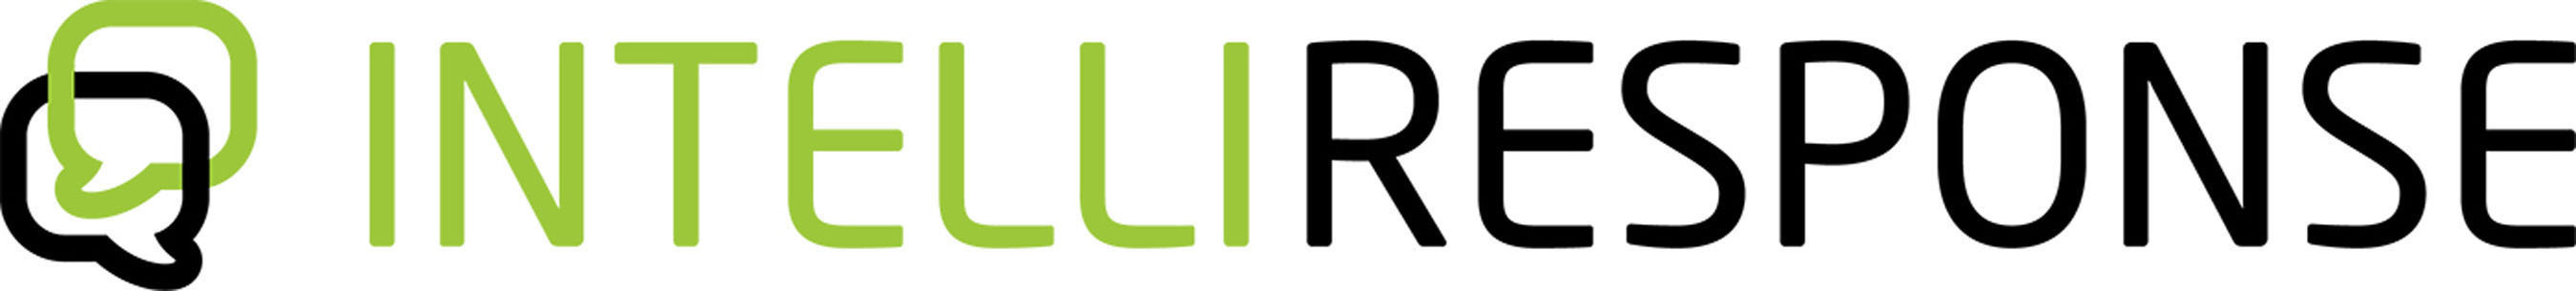 IntelliResponse Logo.